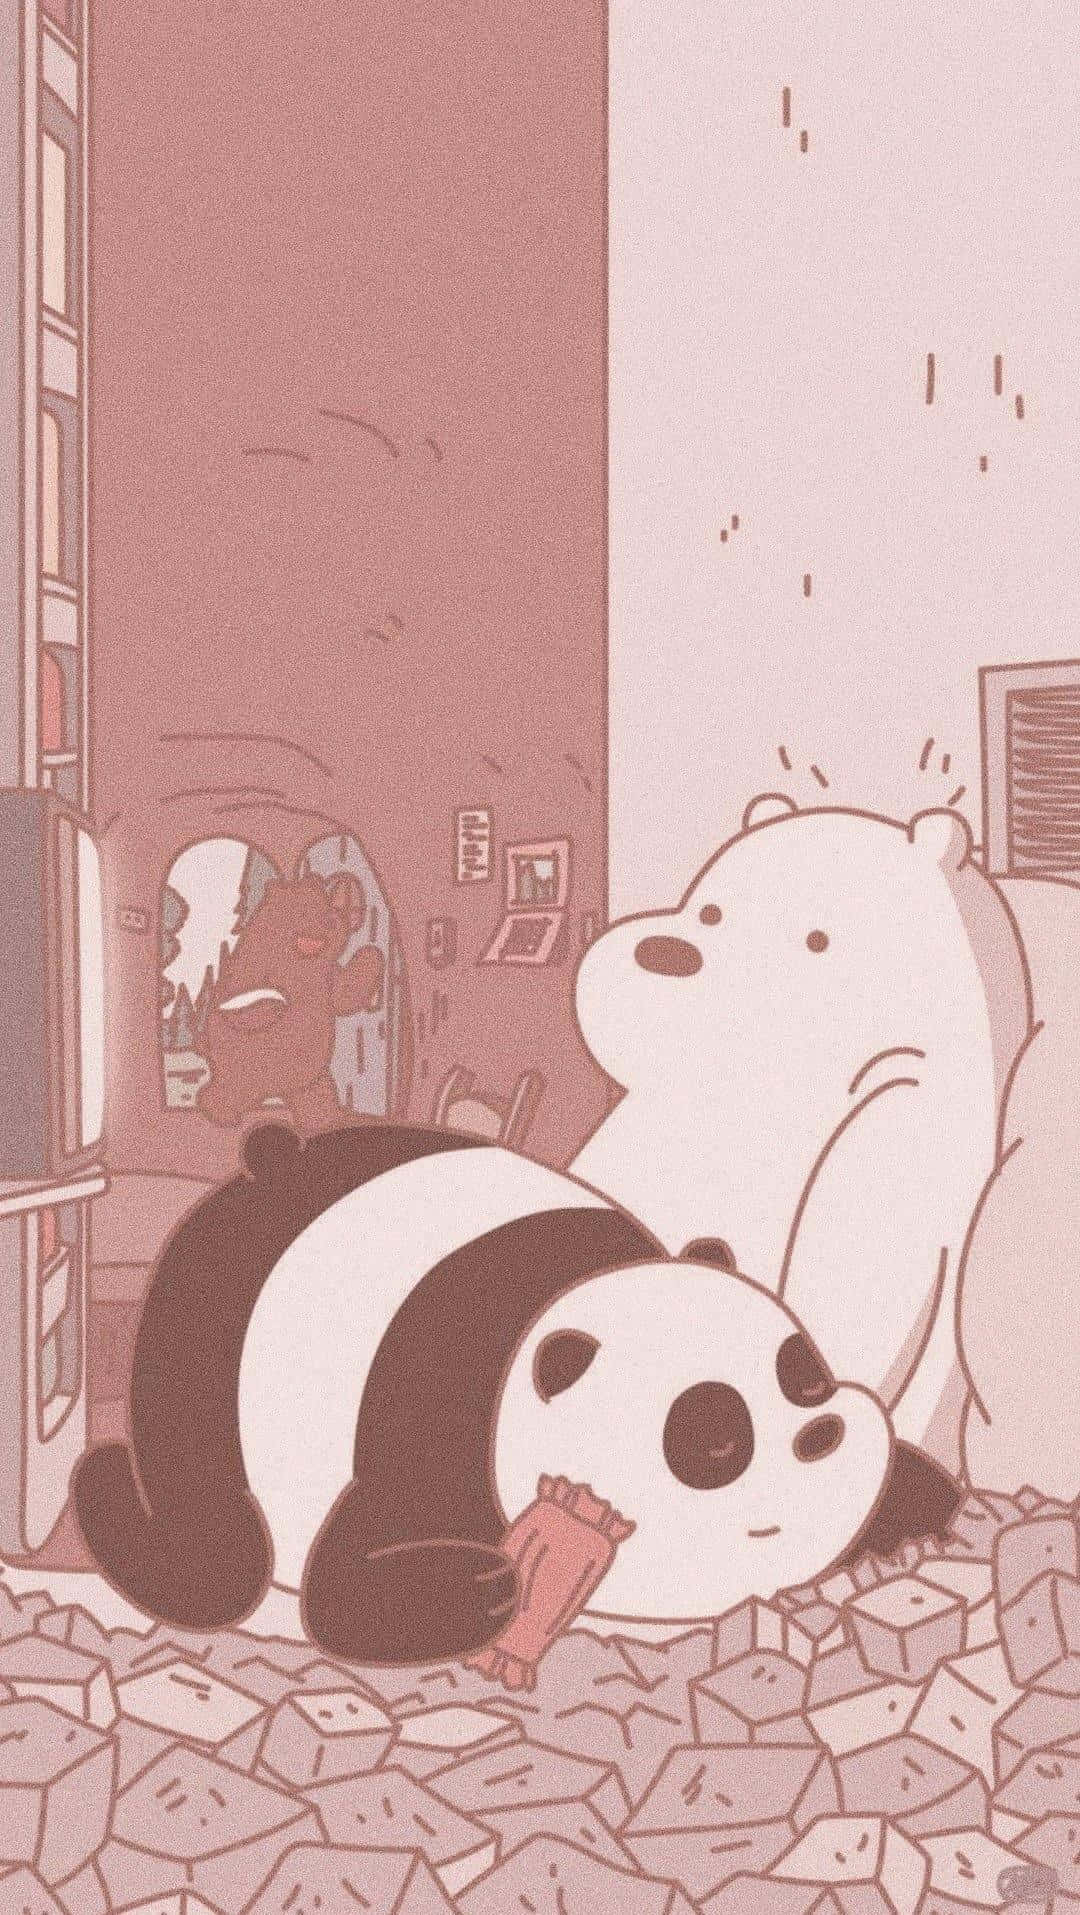 Pandaand Bear Friends Indoor Mishap Wallpaper